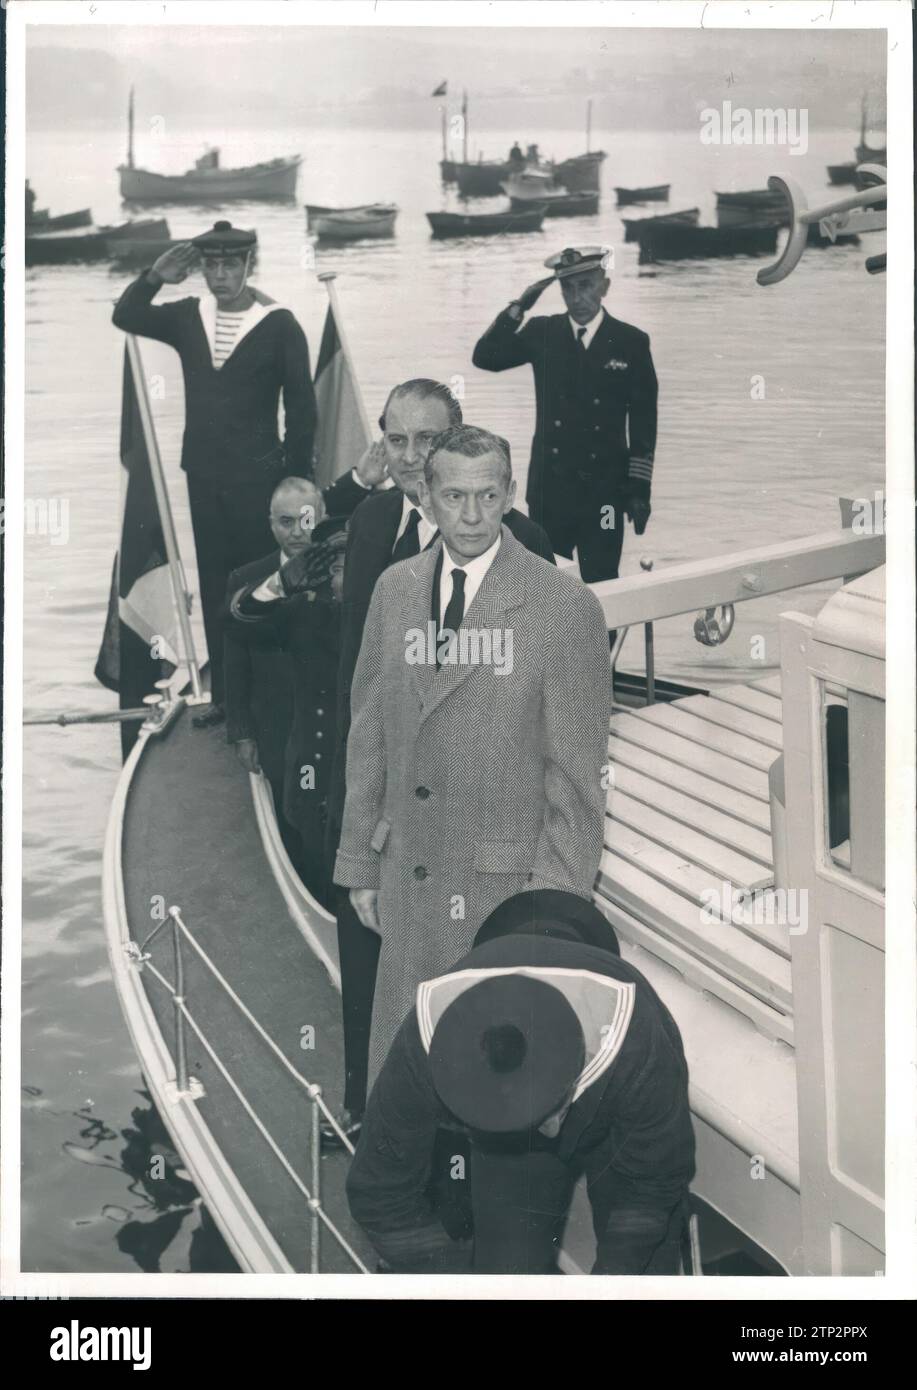 10/31/1959. A l'image, les ministres français et espagnol des Affaires étrangères embarquent sur un bateau à leur arrivée au port de Fuenterrabia. Crédit : Album / Archivo ABC / Marín Banque D'Images